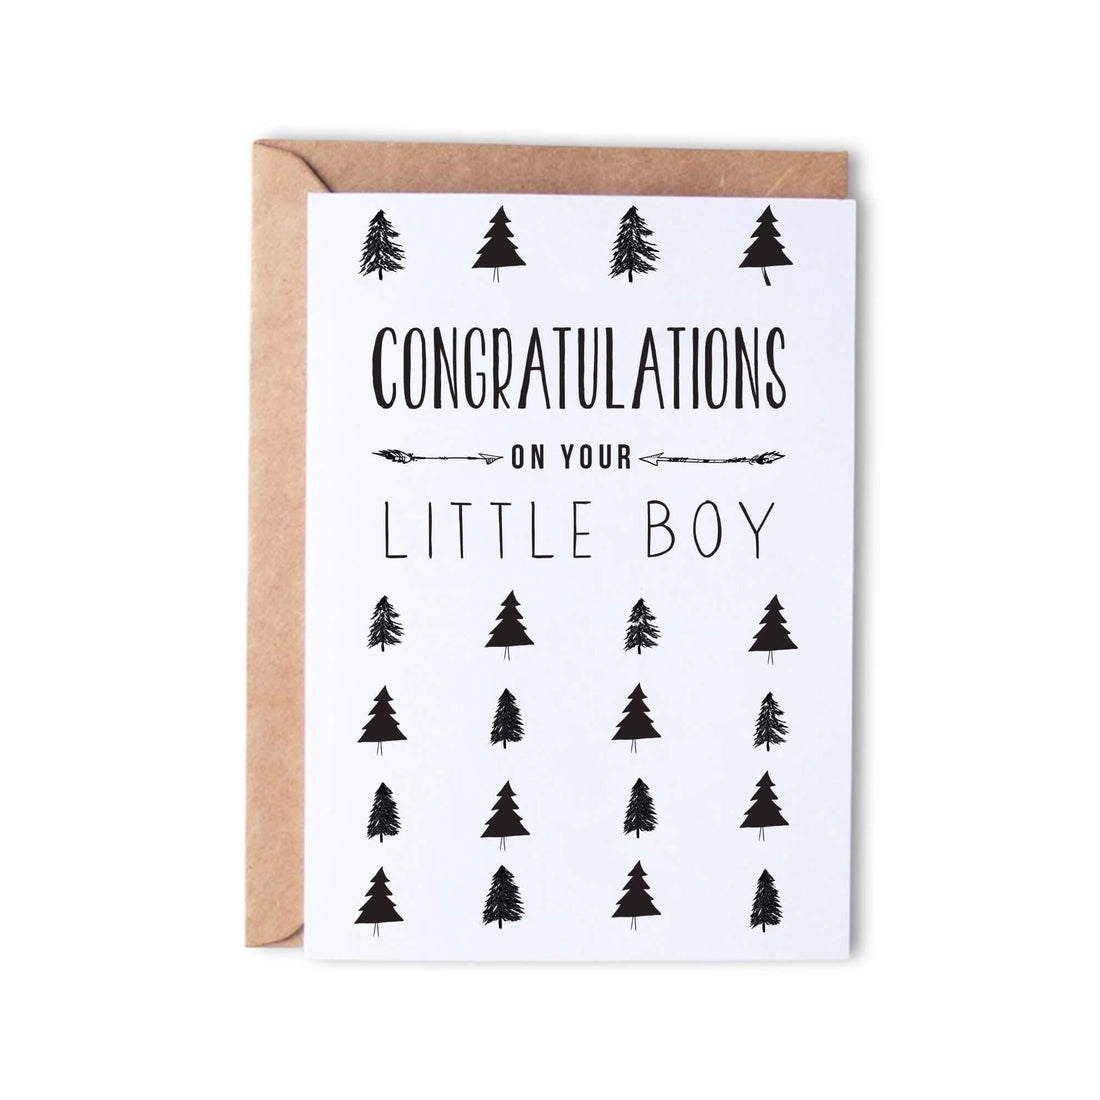 Congratulations little boy - Monk Designs